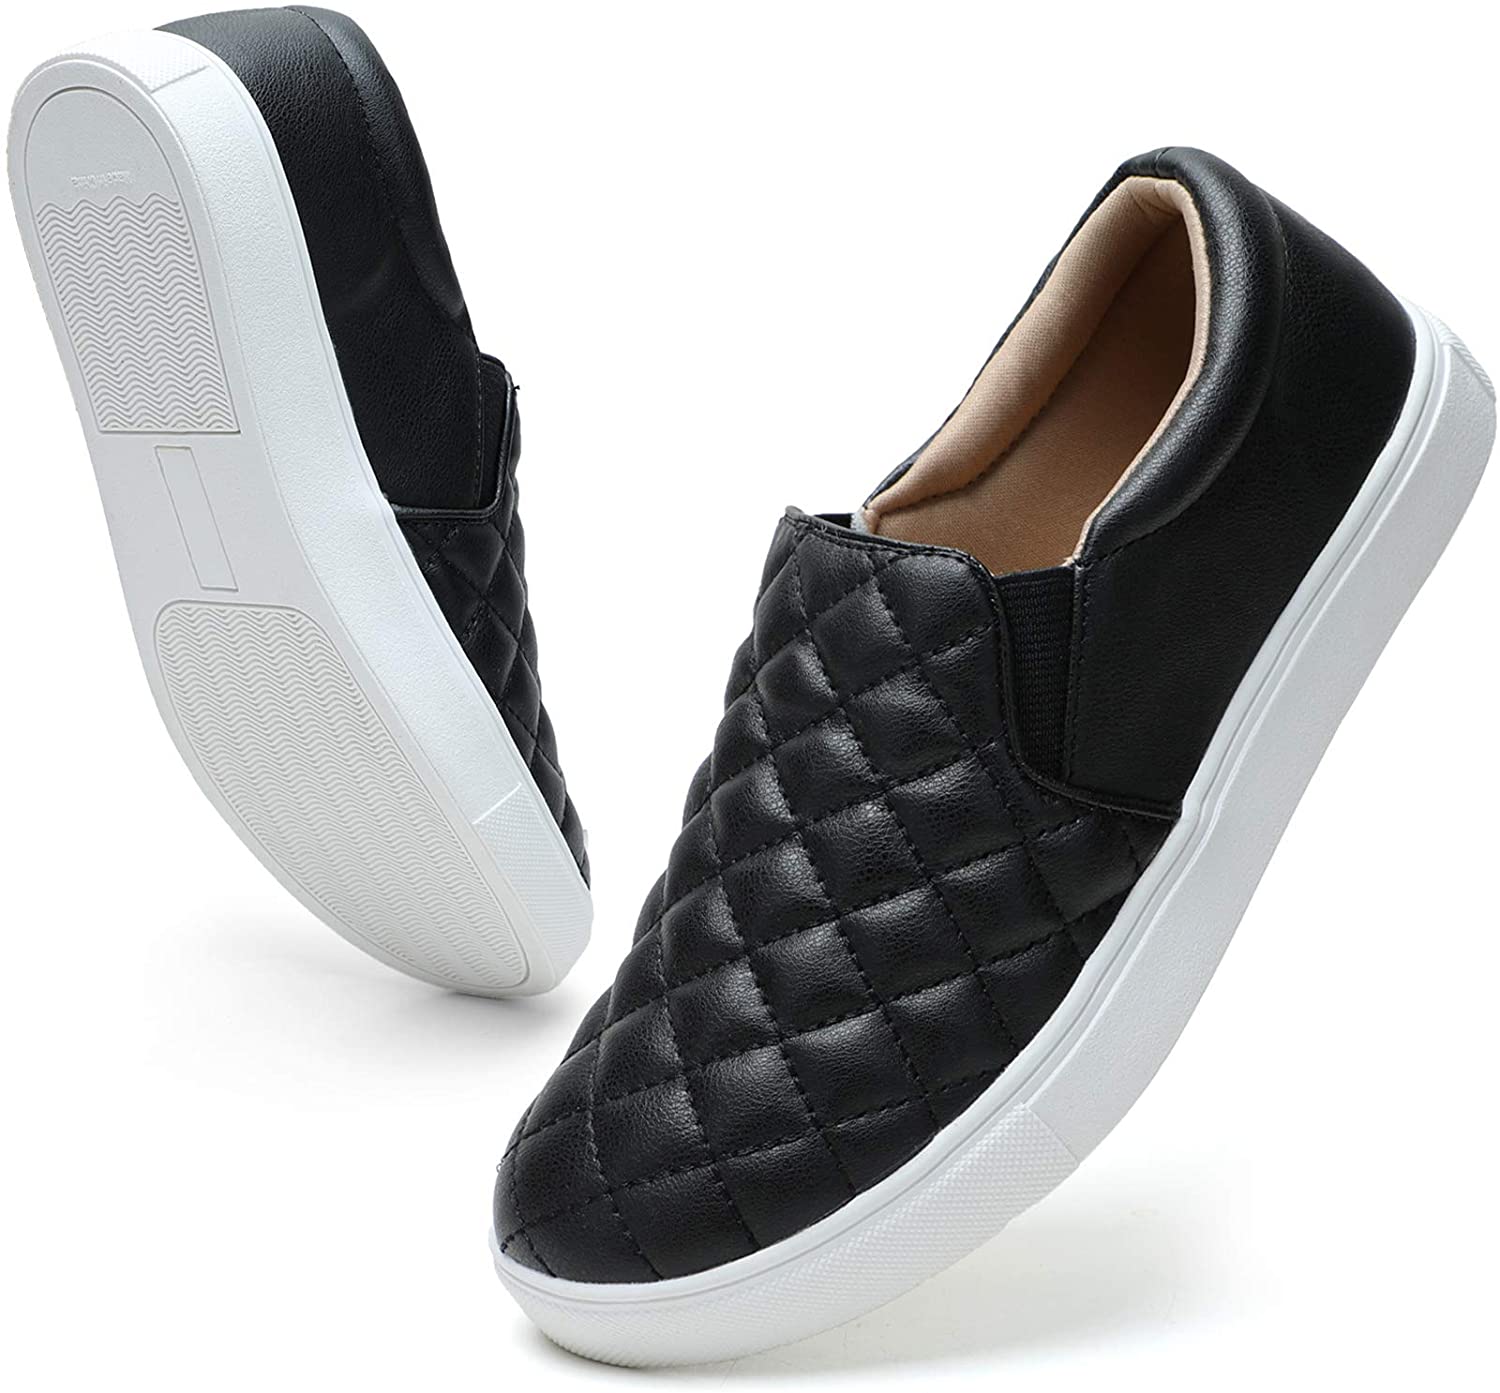 STQ Loafers for Women Memory Foam Slip On Sneakers, 18106 Black, Size 8 ...